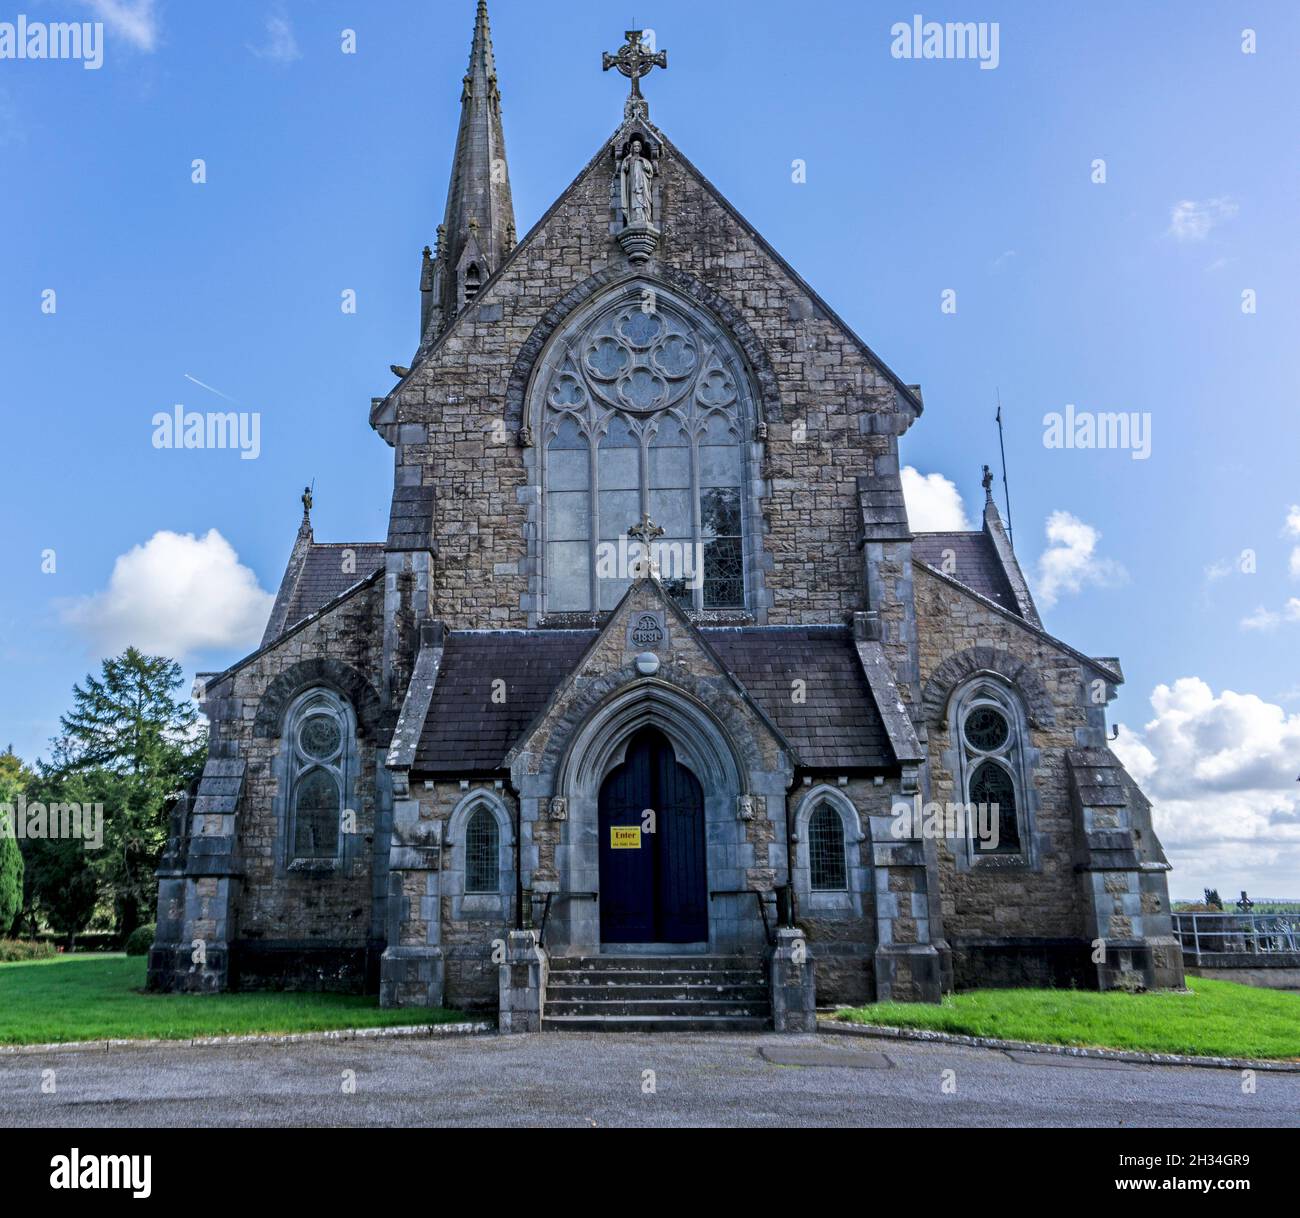 St. Brigids römisch-katholische Kirche im Dorf Ardagh, County Longford, Irland. Die Kirche wurde in den 1880er Jahren erbaut. Stockfoto